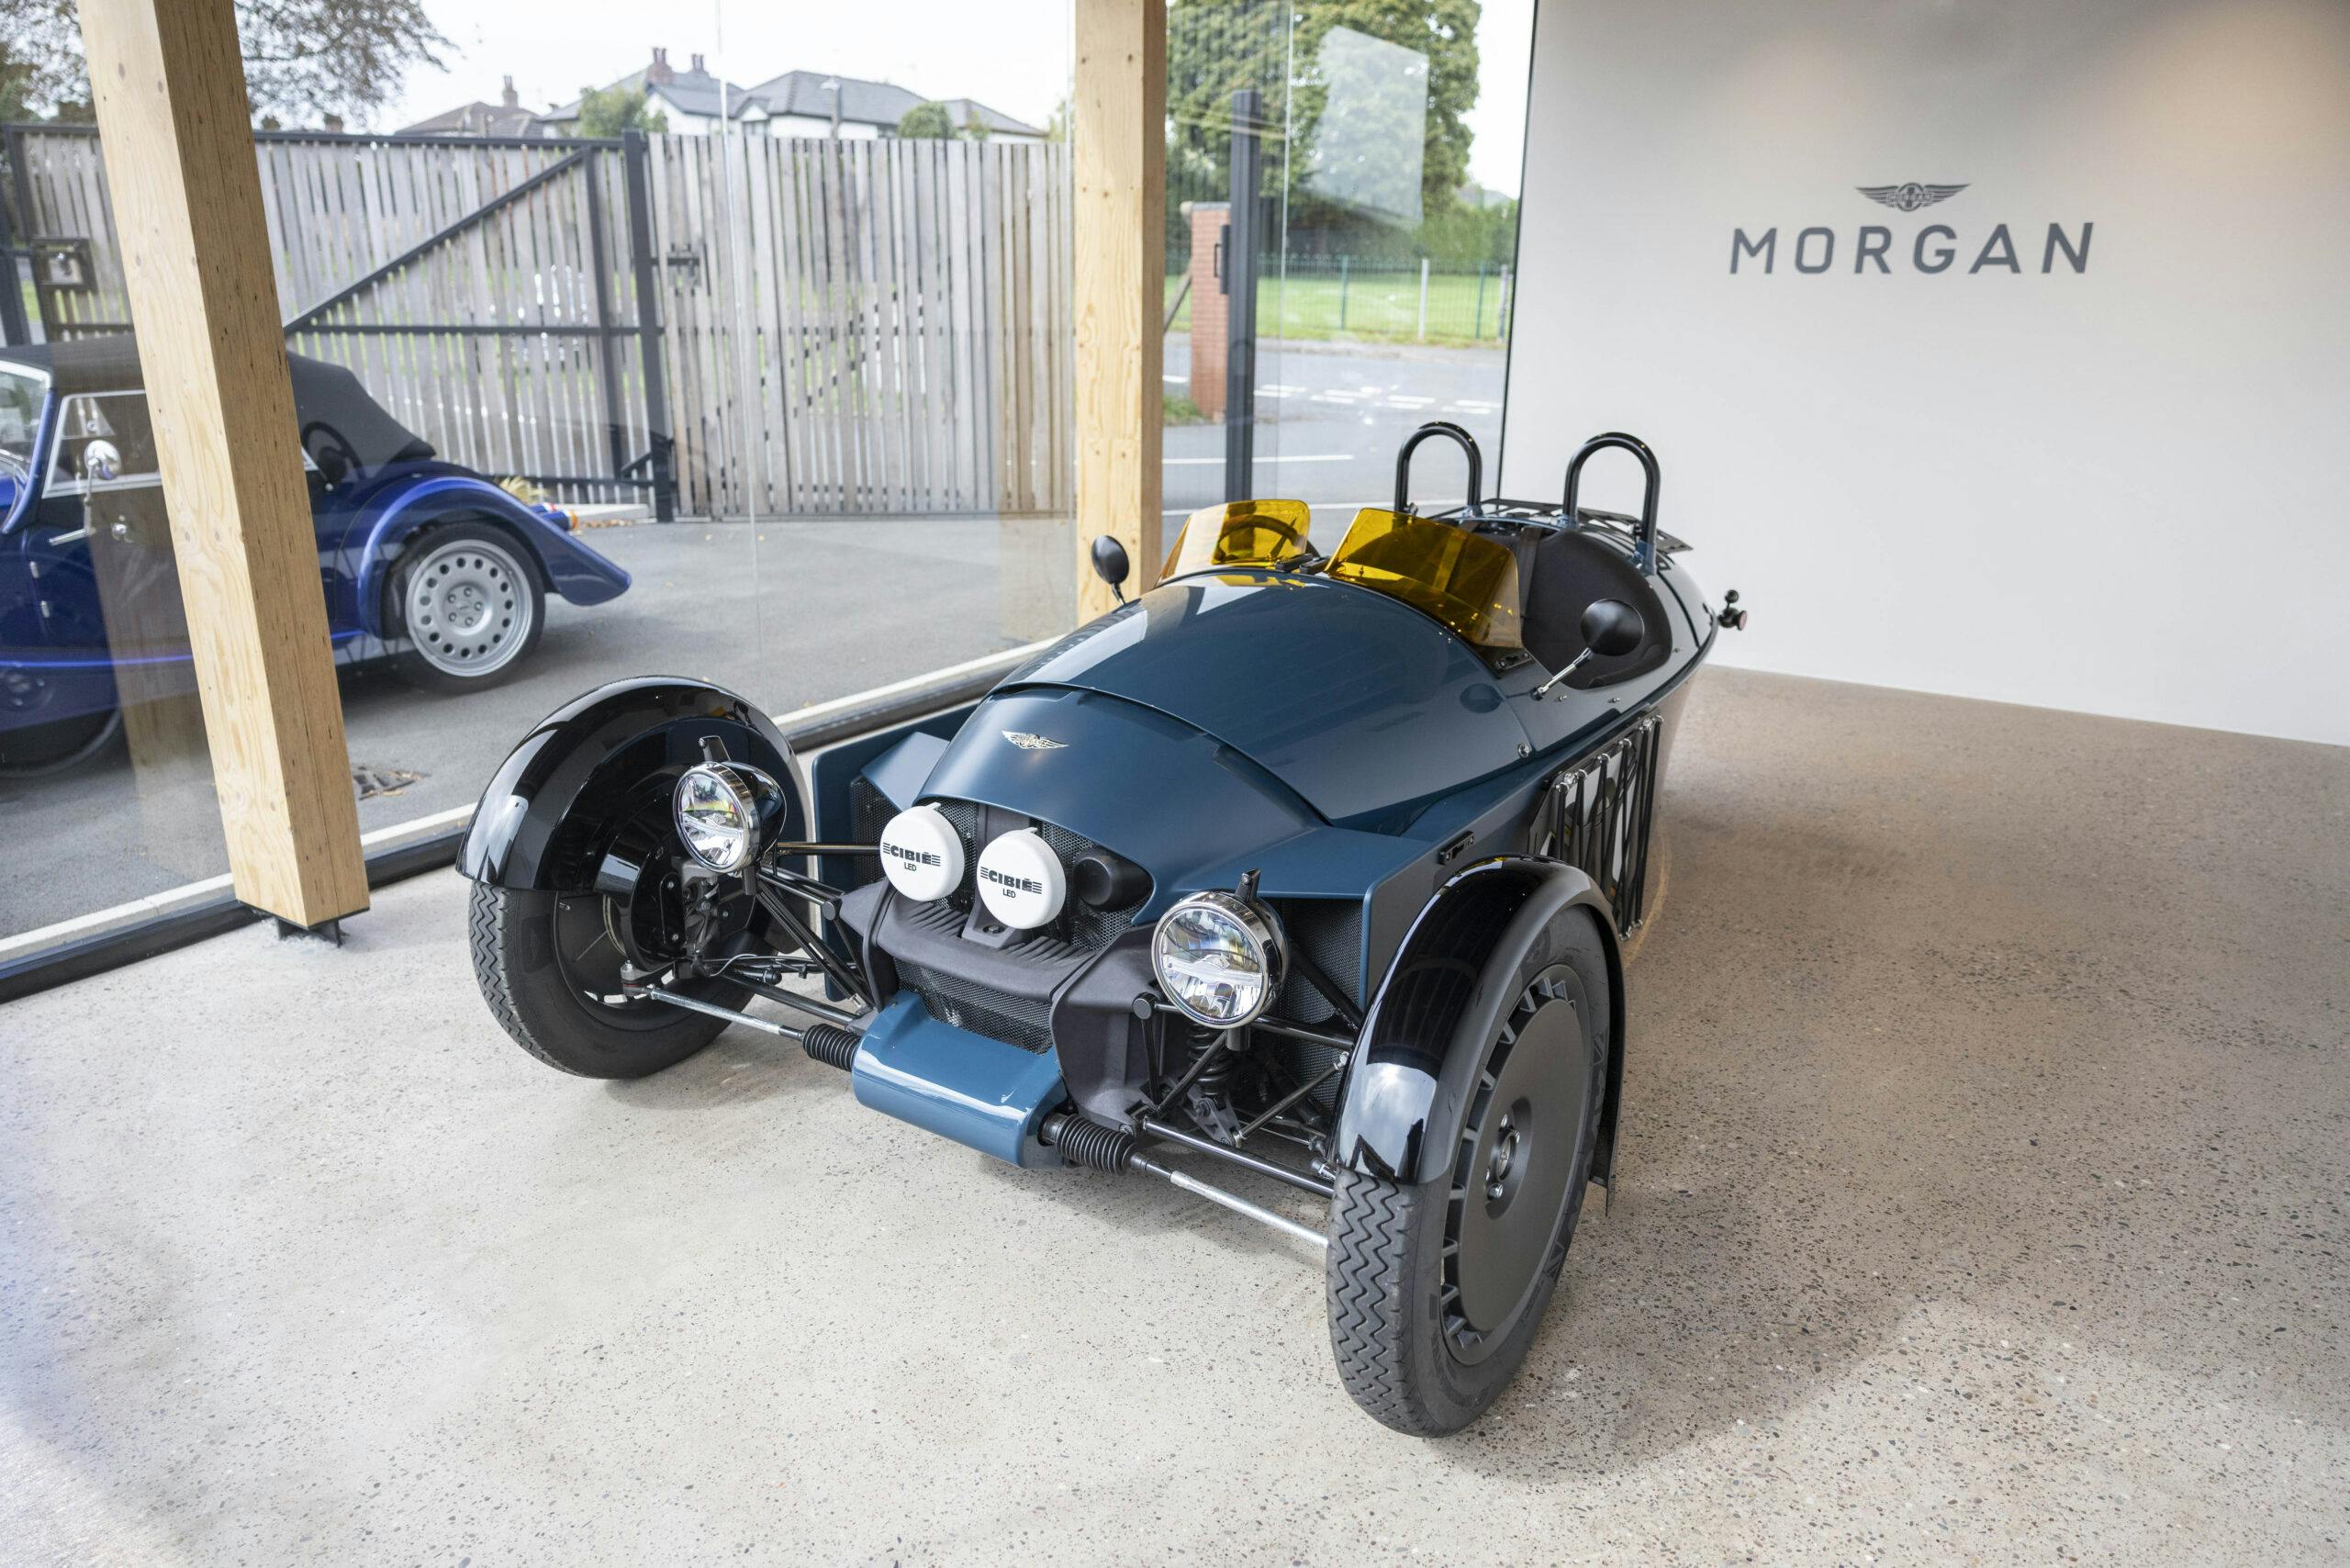 Morgan Motor Company shop museum display